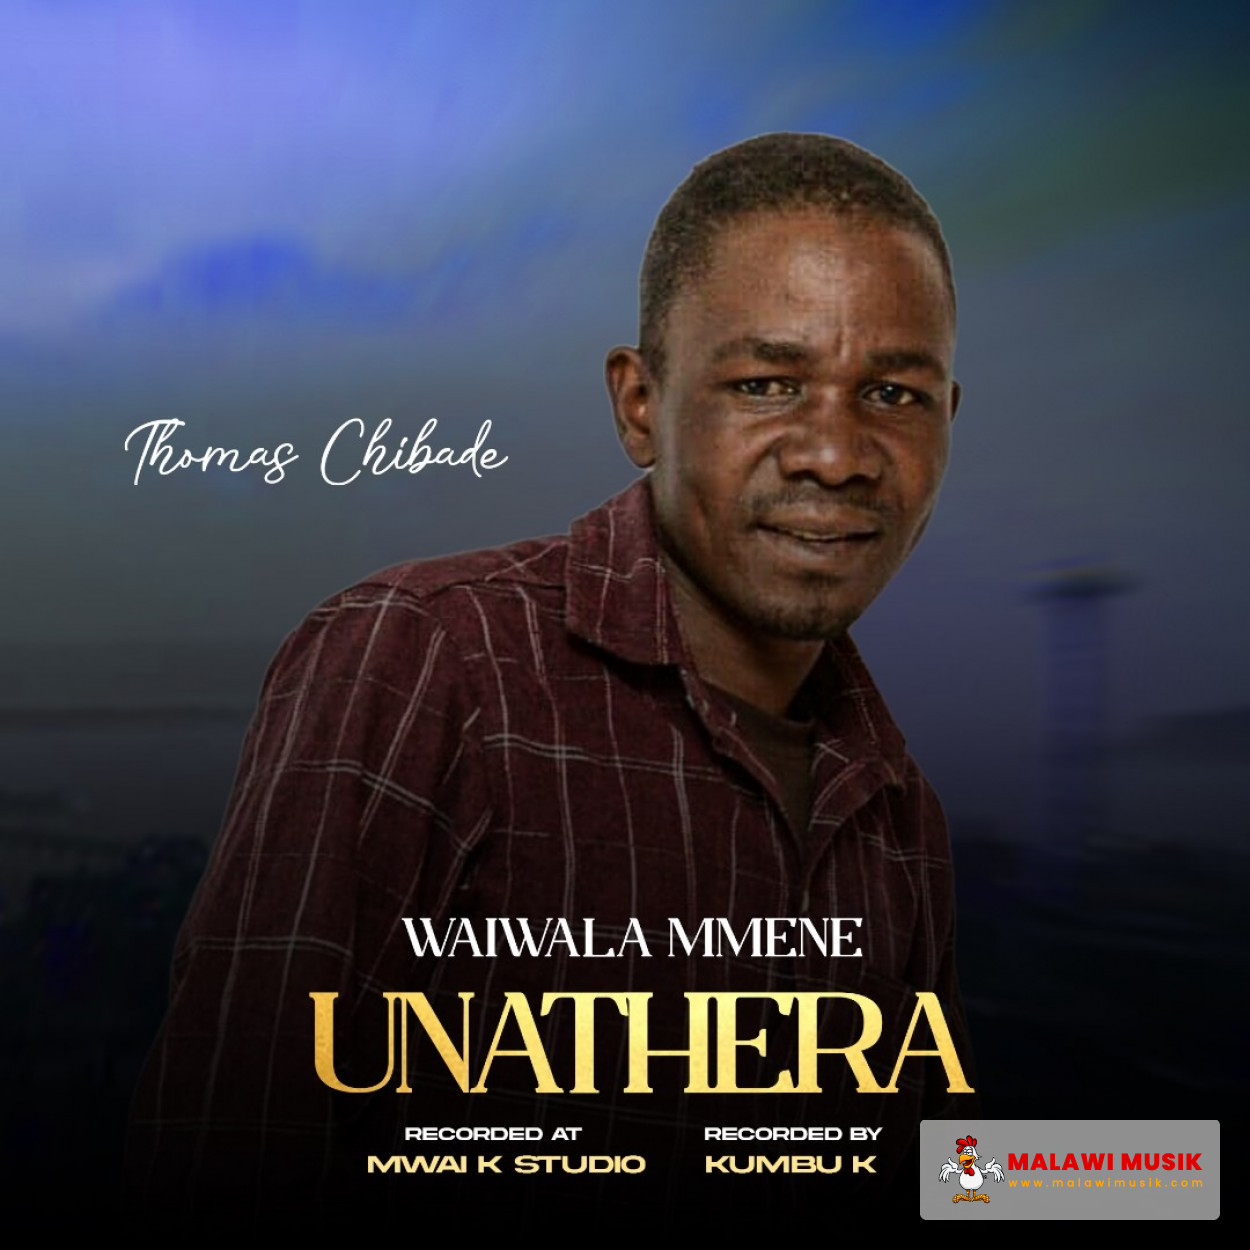 Thomas Chibade - Waiwala mmene unathela (Prod. Mwai K & Kumbu K)